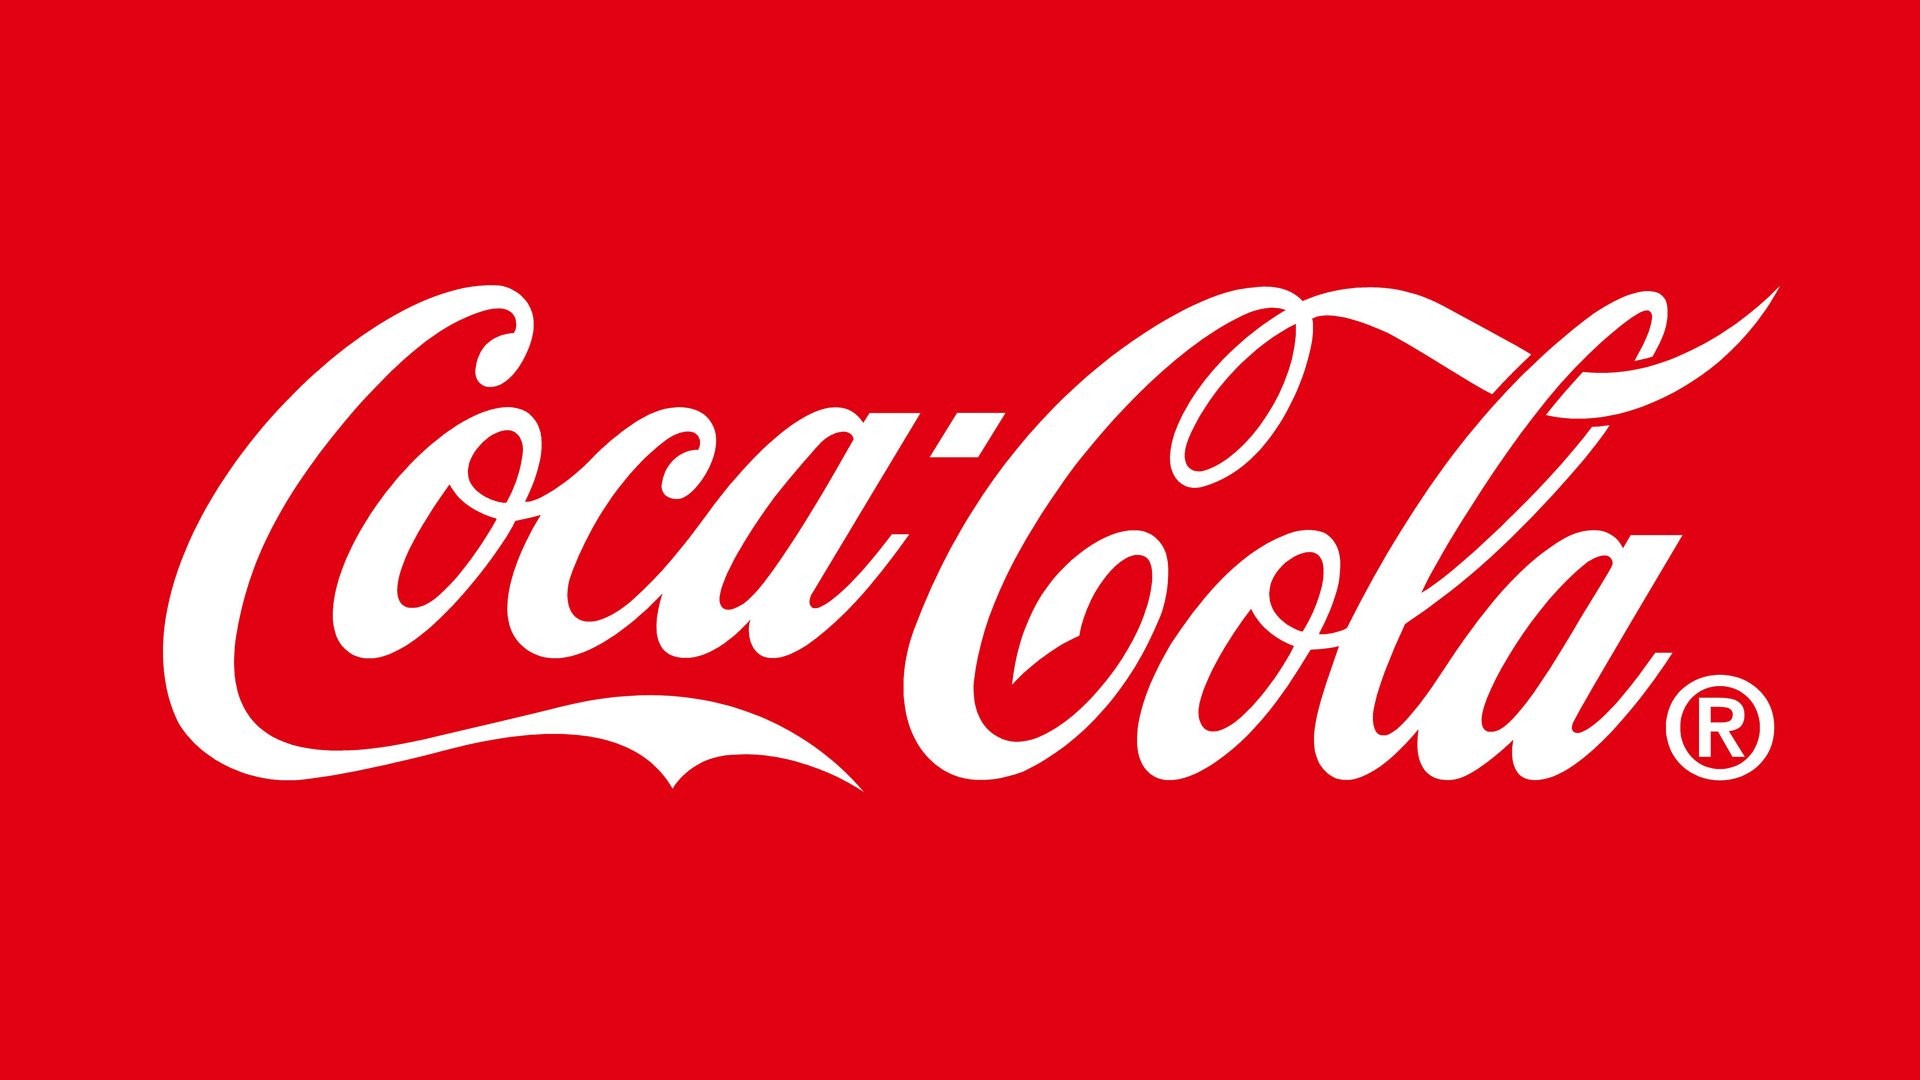 1920x1080 Products - Coca Cola Wallpaper